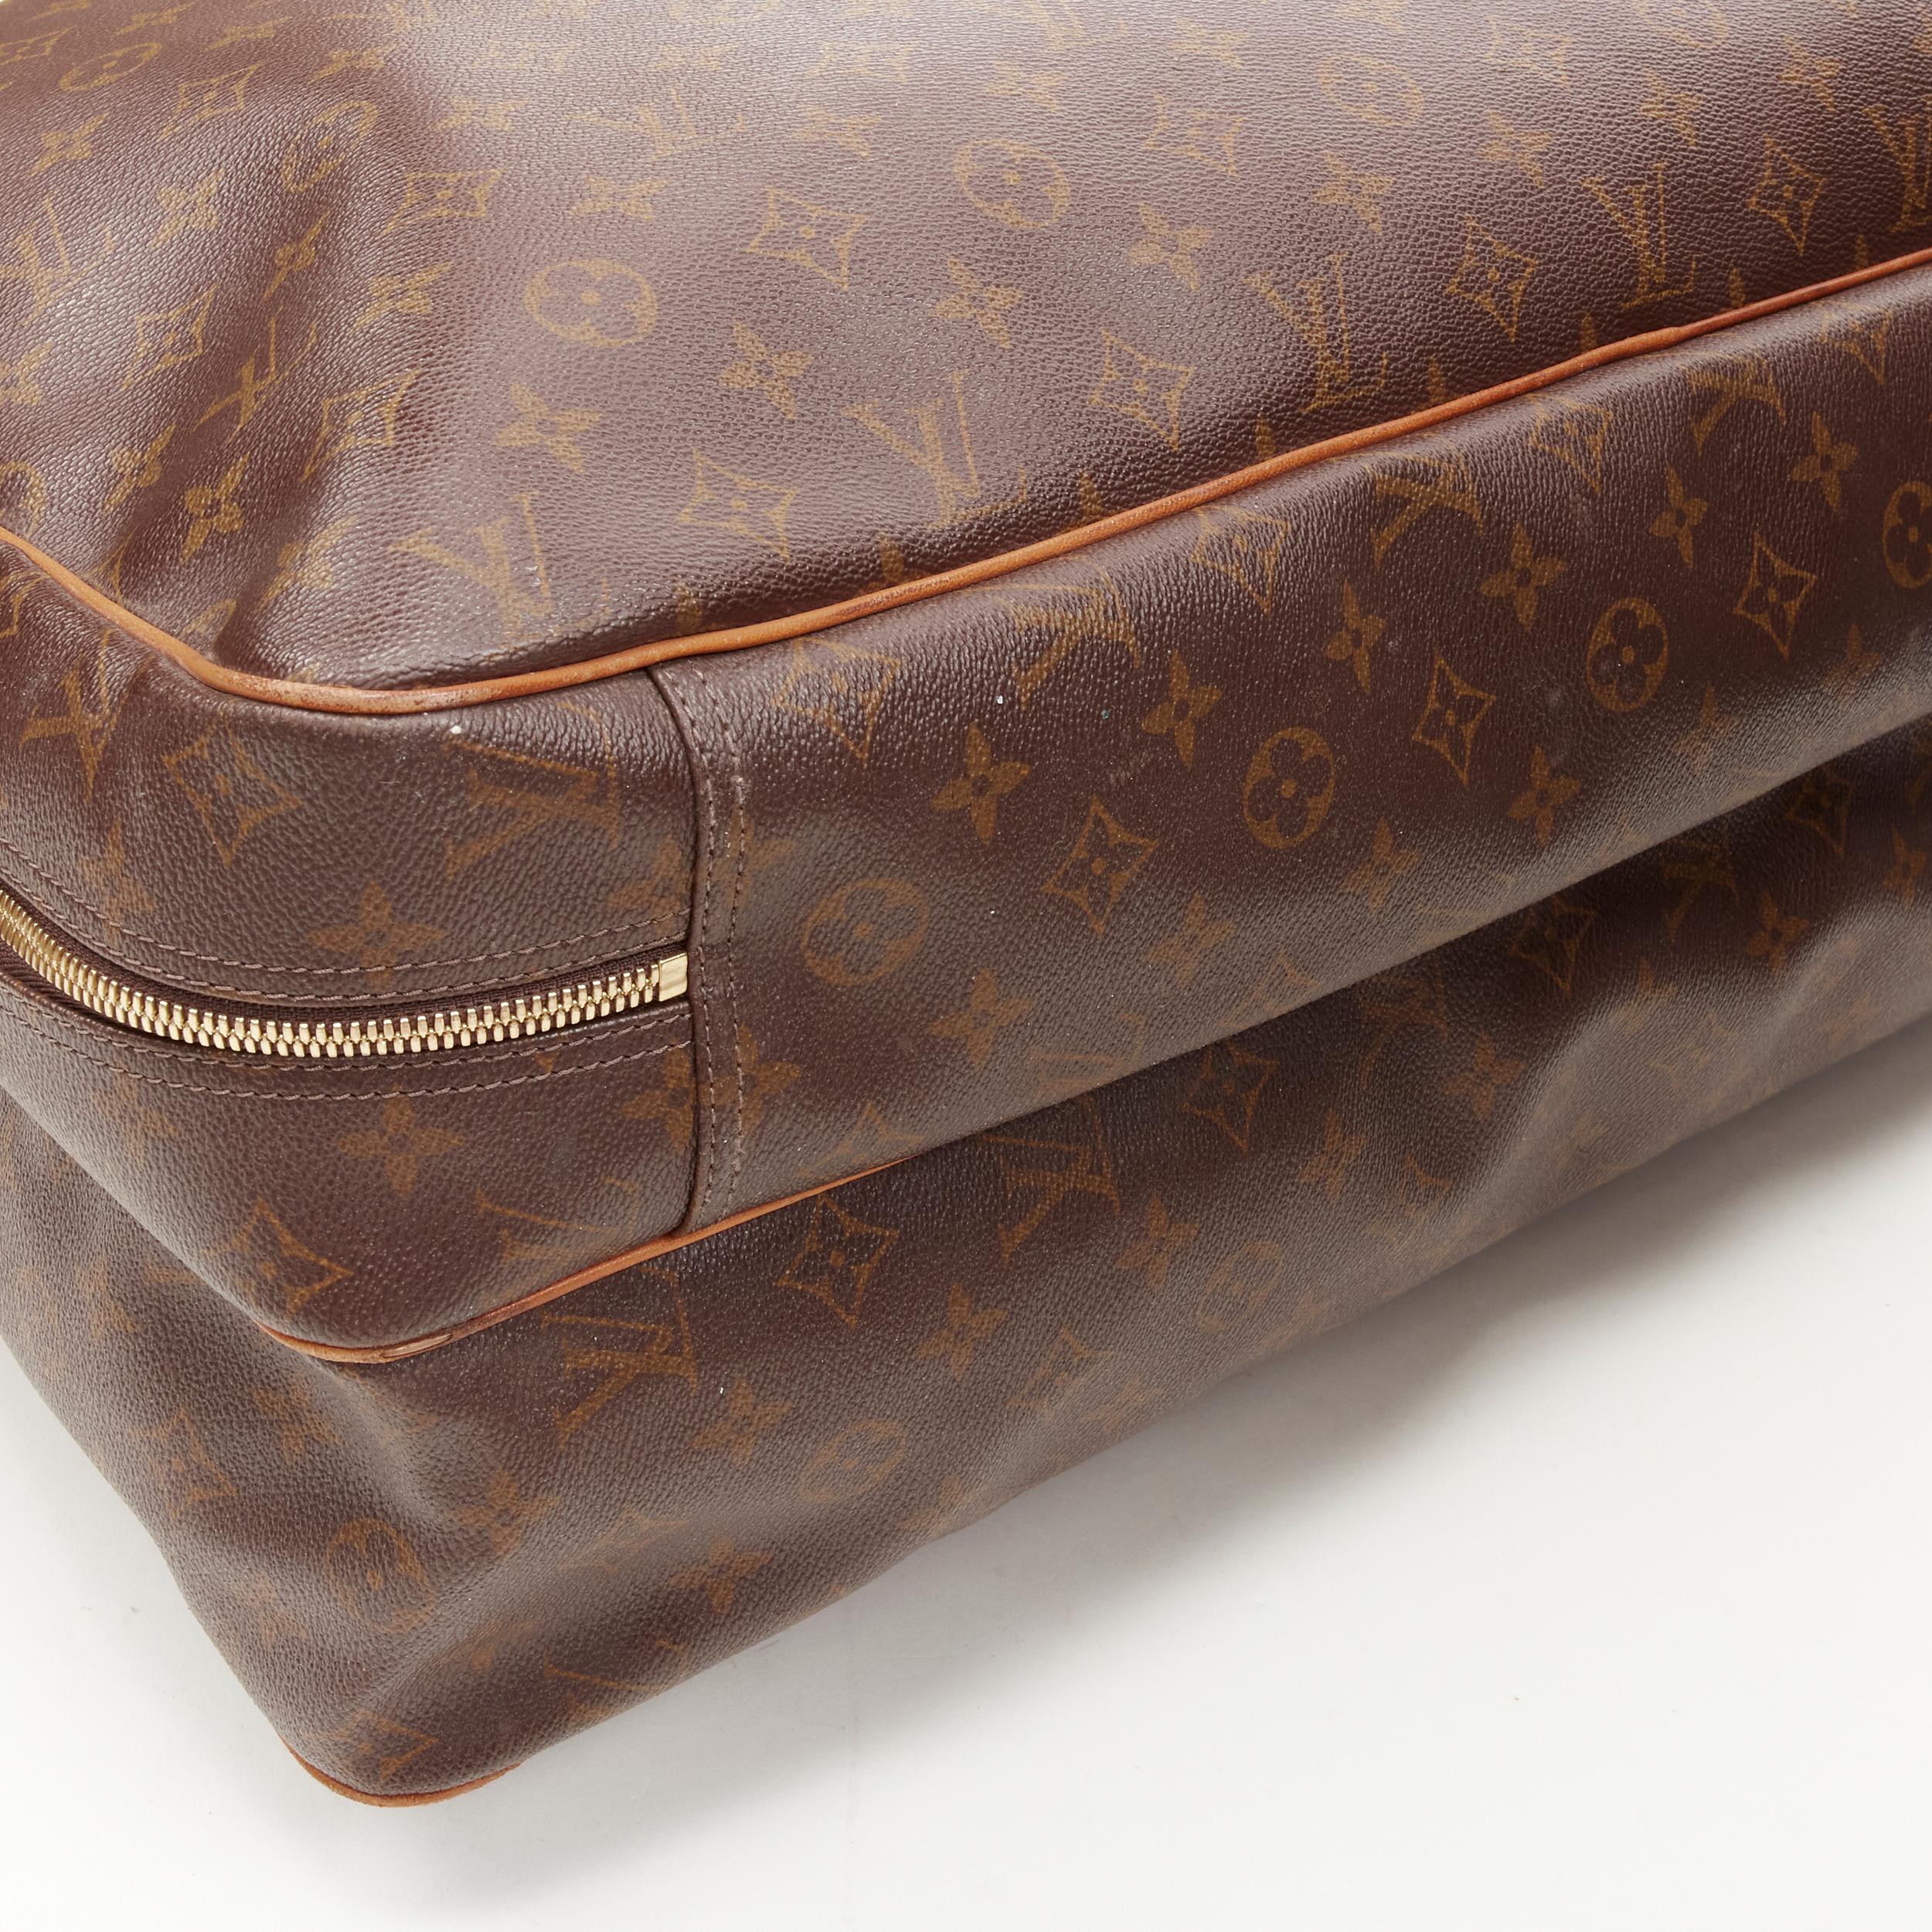 LOUIS VUITTON VIntage Alize brown monogram leather 2 compartment bag garment bag For Sale 3